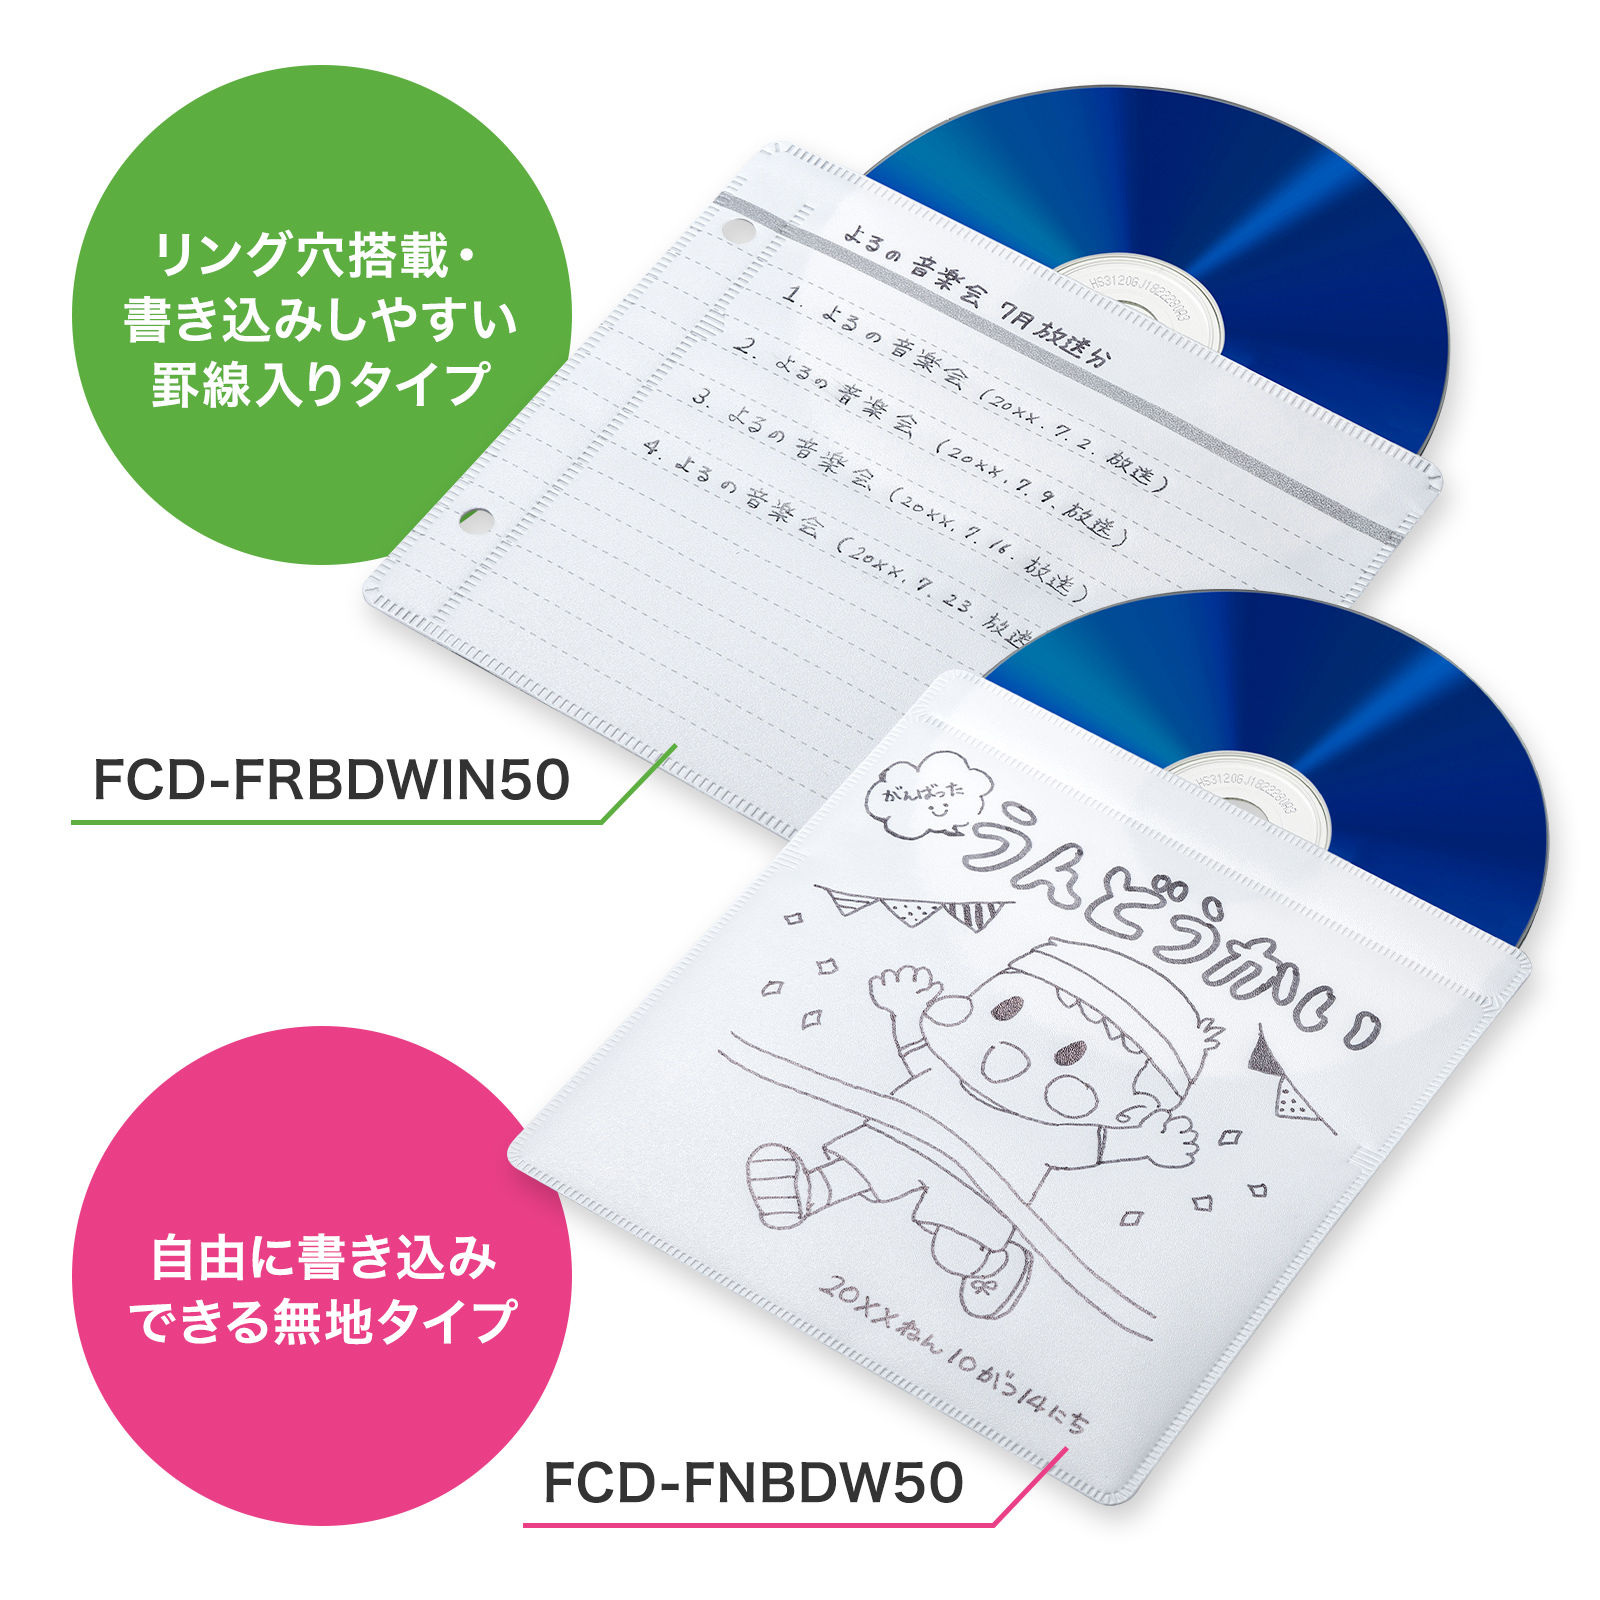 FCD-FNBDW50